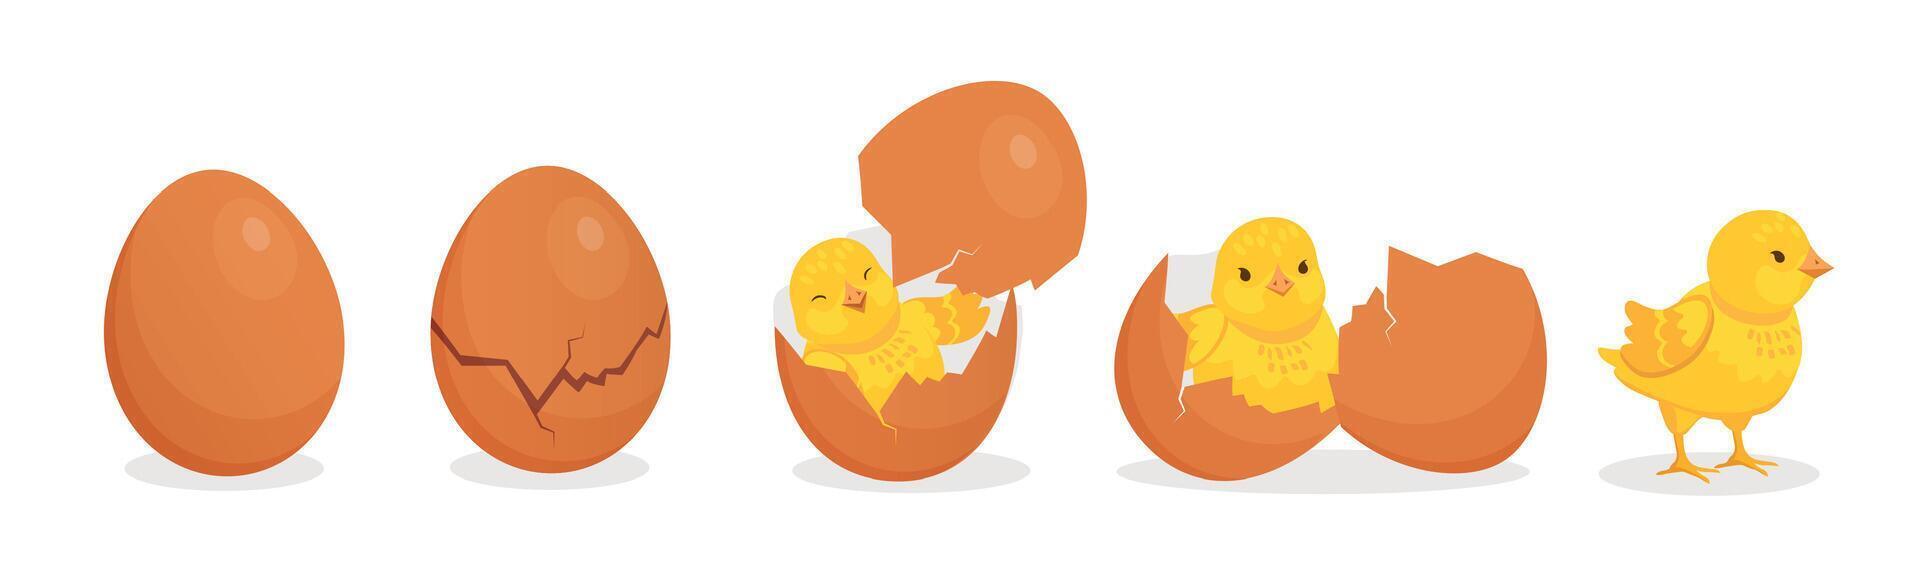 dibujos animados linda bebé pollo escotilla desde huevo etapas agrietado cáscara de huevo y recién nacido amarillo polluelo. Pascua de Resurrección granja pájaro personaje nacimiento vector concepto